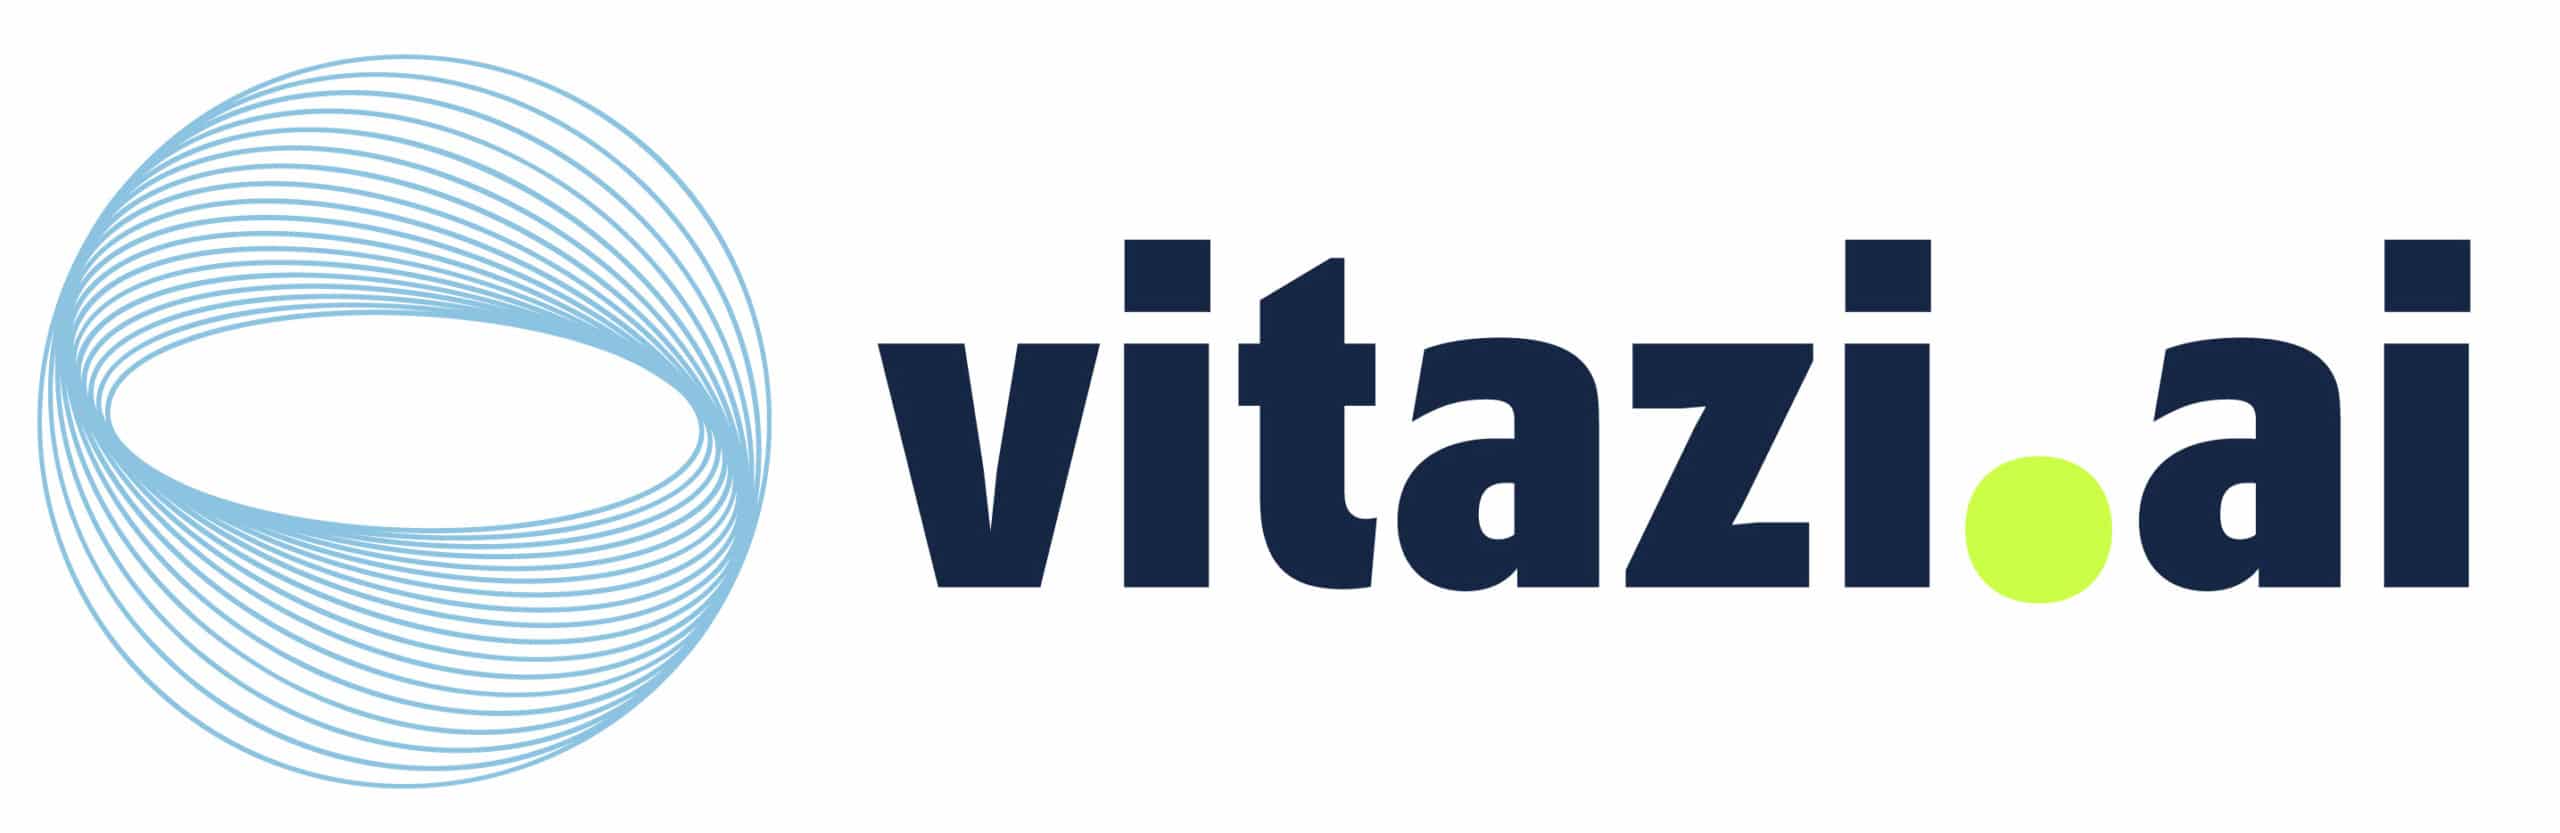 01_Vitazi.ai logo_white_bg